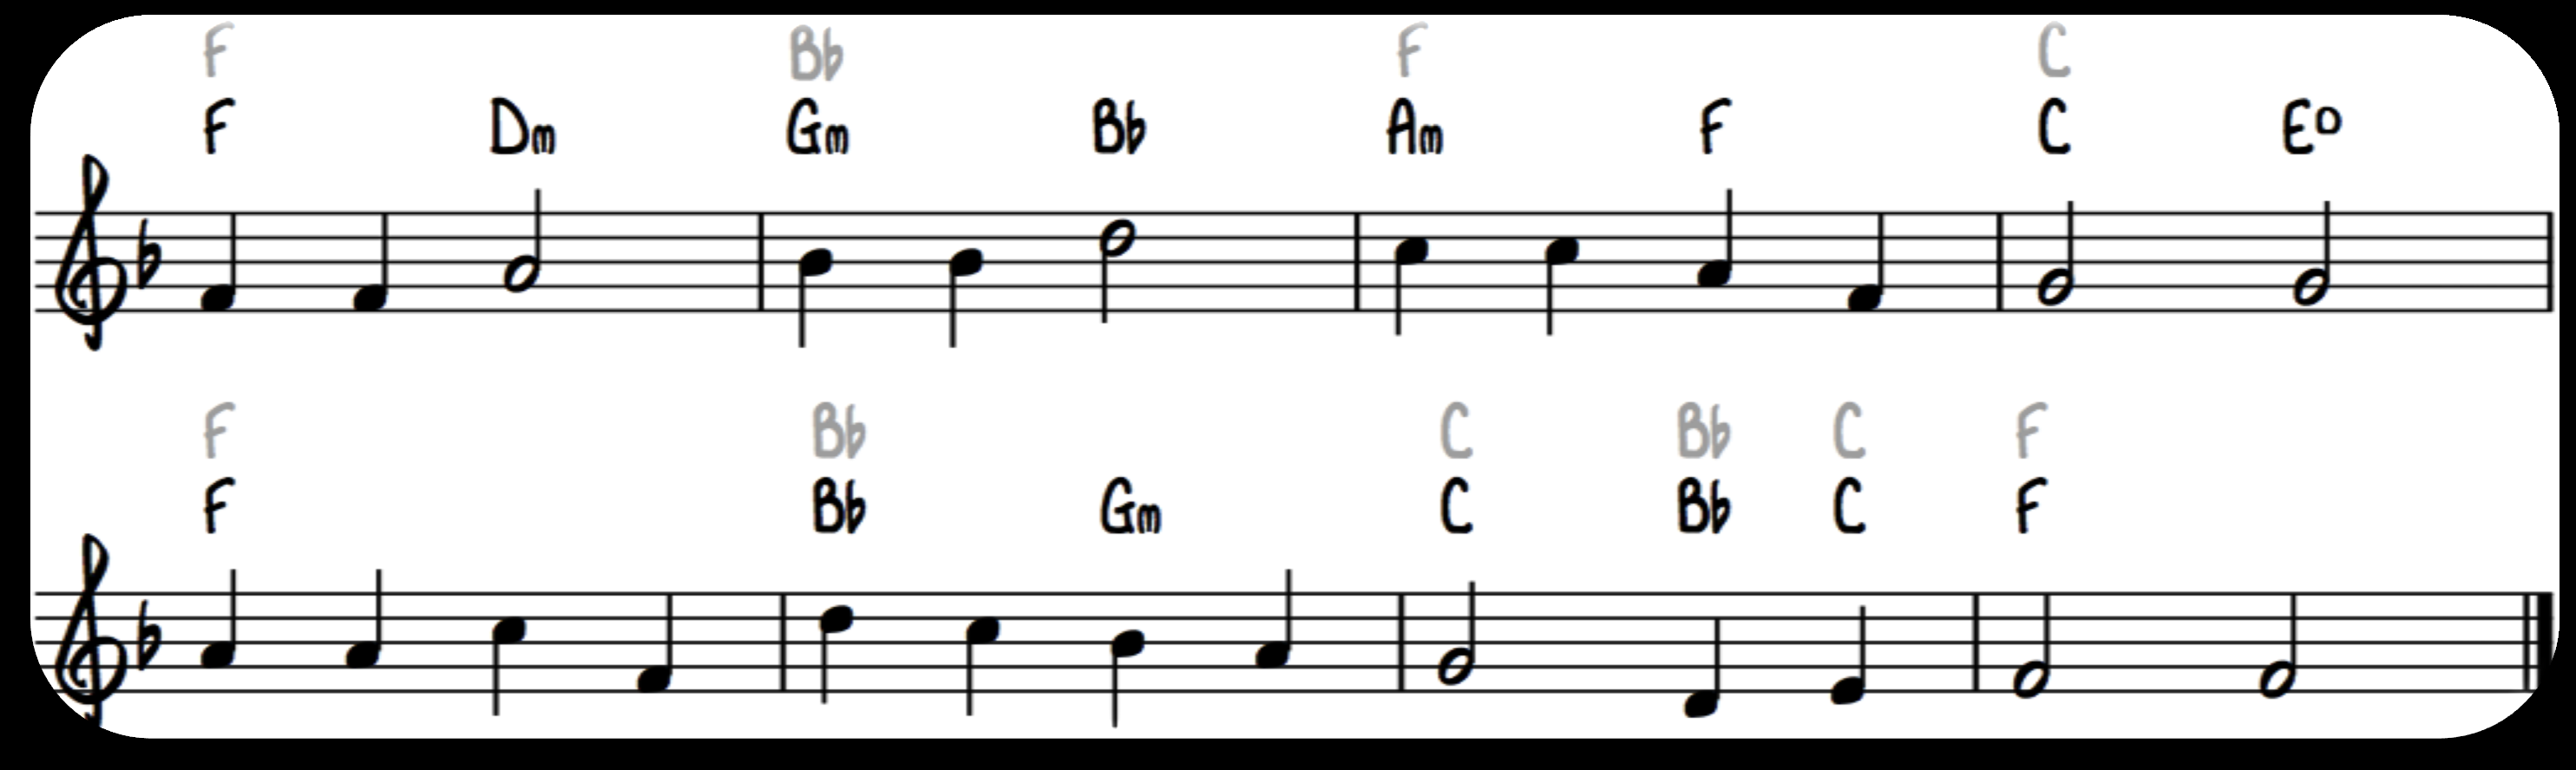 Bytter innenfor samme gruppe Akkordene innenfor samme gruppe deler den samme harmoniske funksjonen. Derfor kan vi bytte mellom akkordene i hver gruppe så lenge det passer med meloditonen.